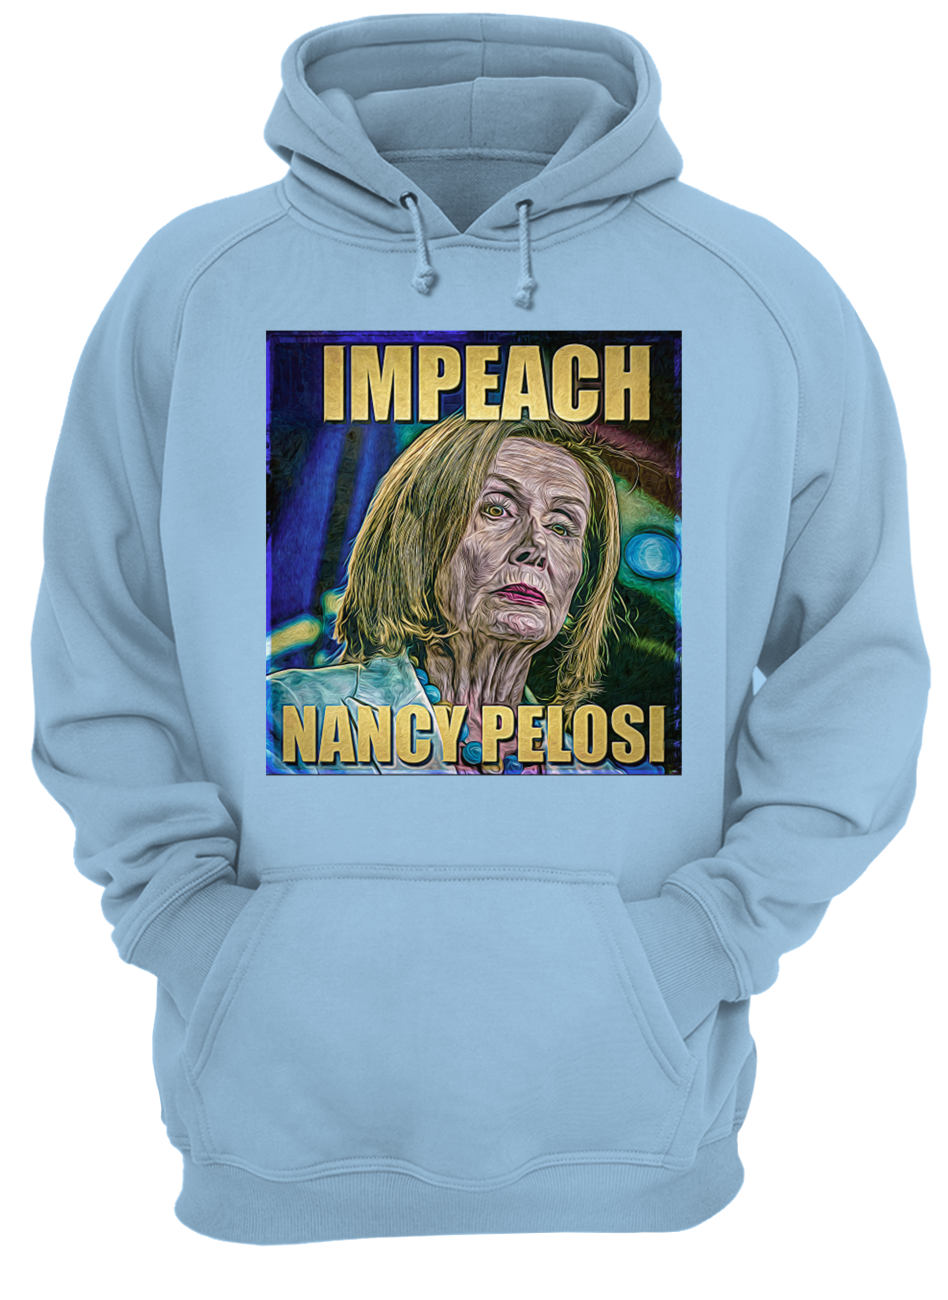 Trump impeach nancy pelosi hoodie